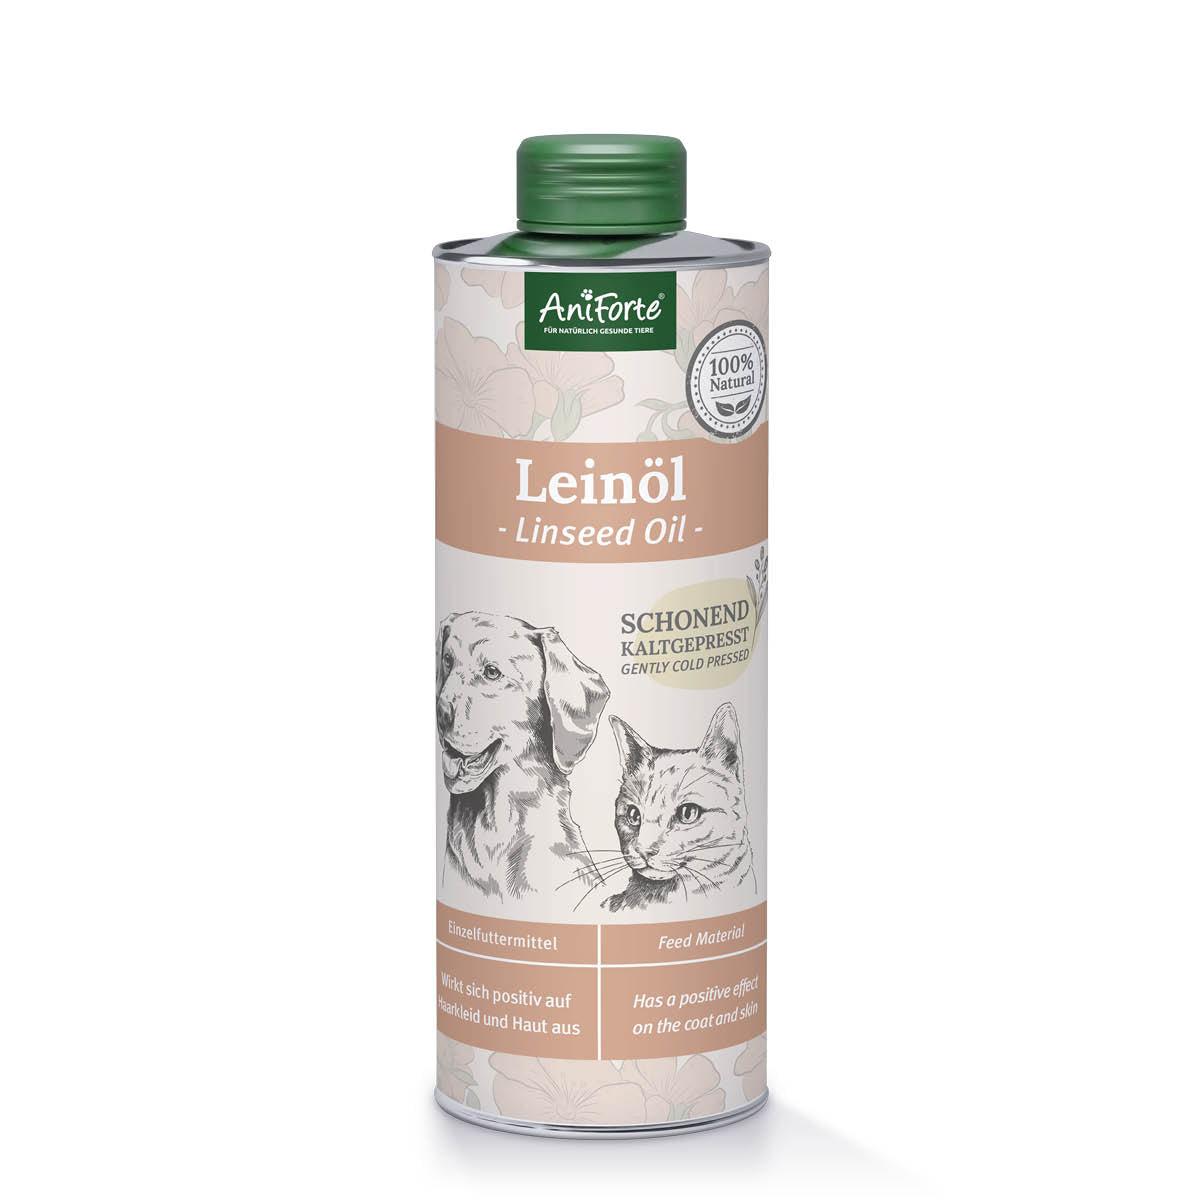 aniforte Leinöl - 1 Liter